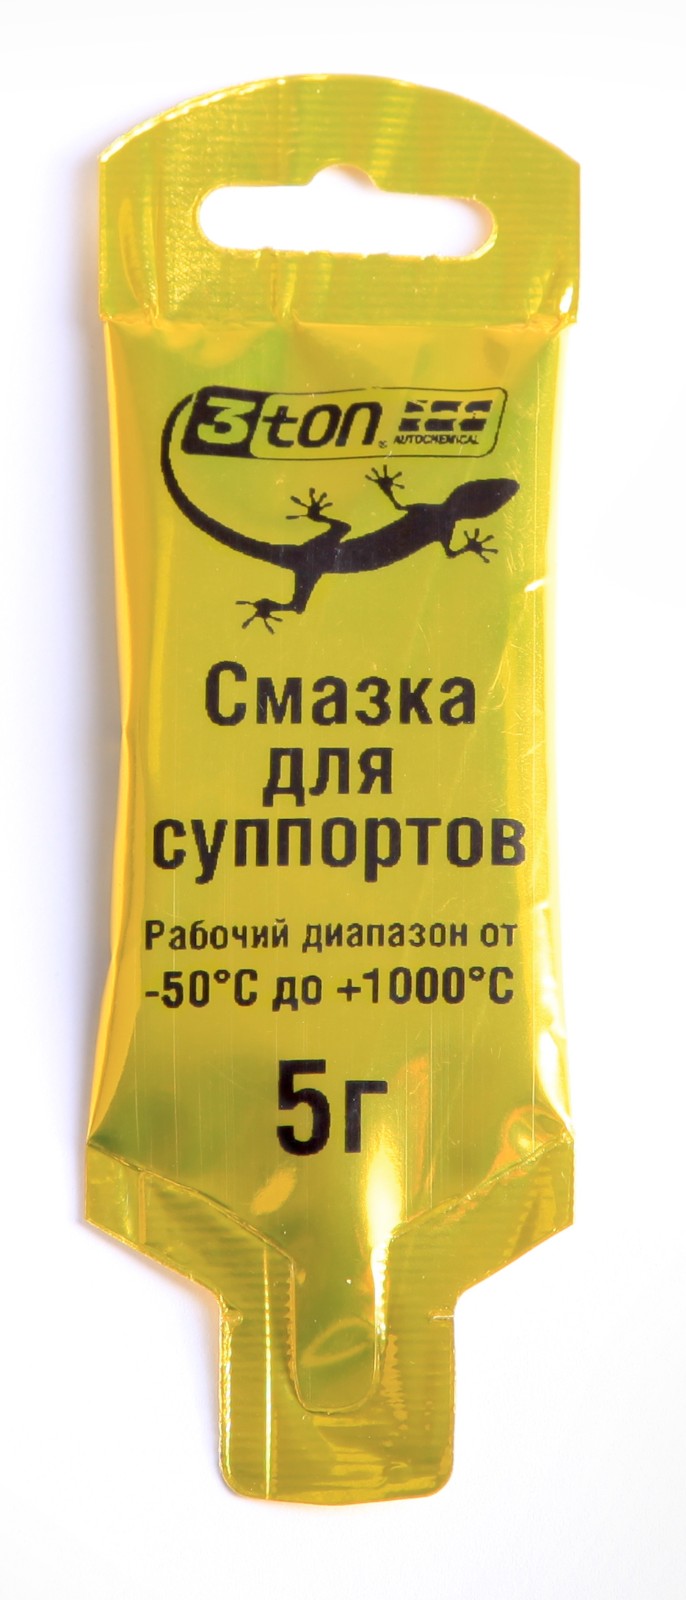 Смазка для суппортов 3ton ТР-102 5г - купить в Москве, цены на Мегамаркет | 100026737332